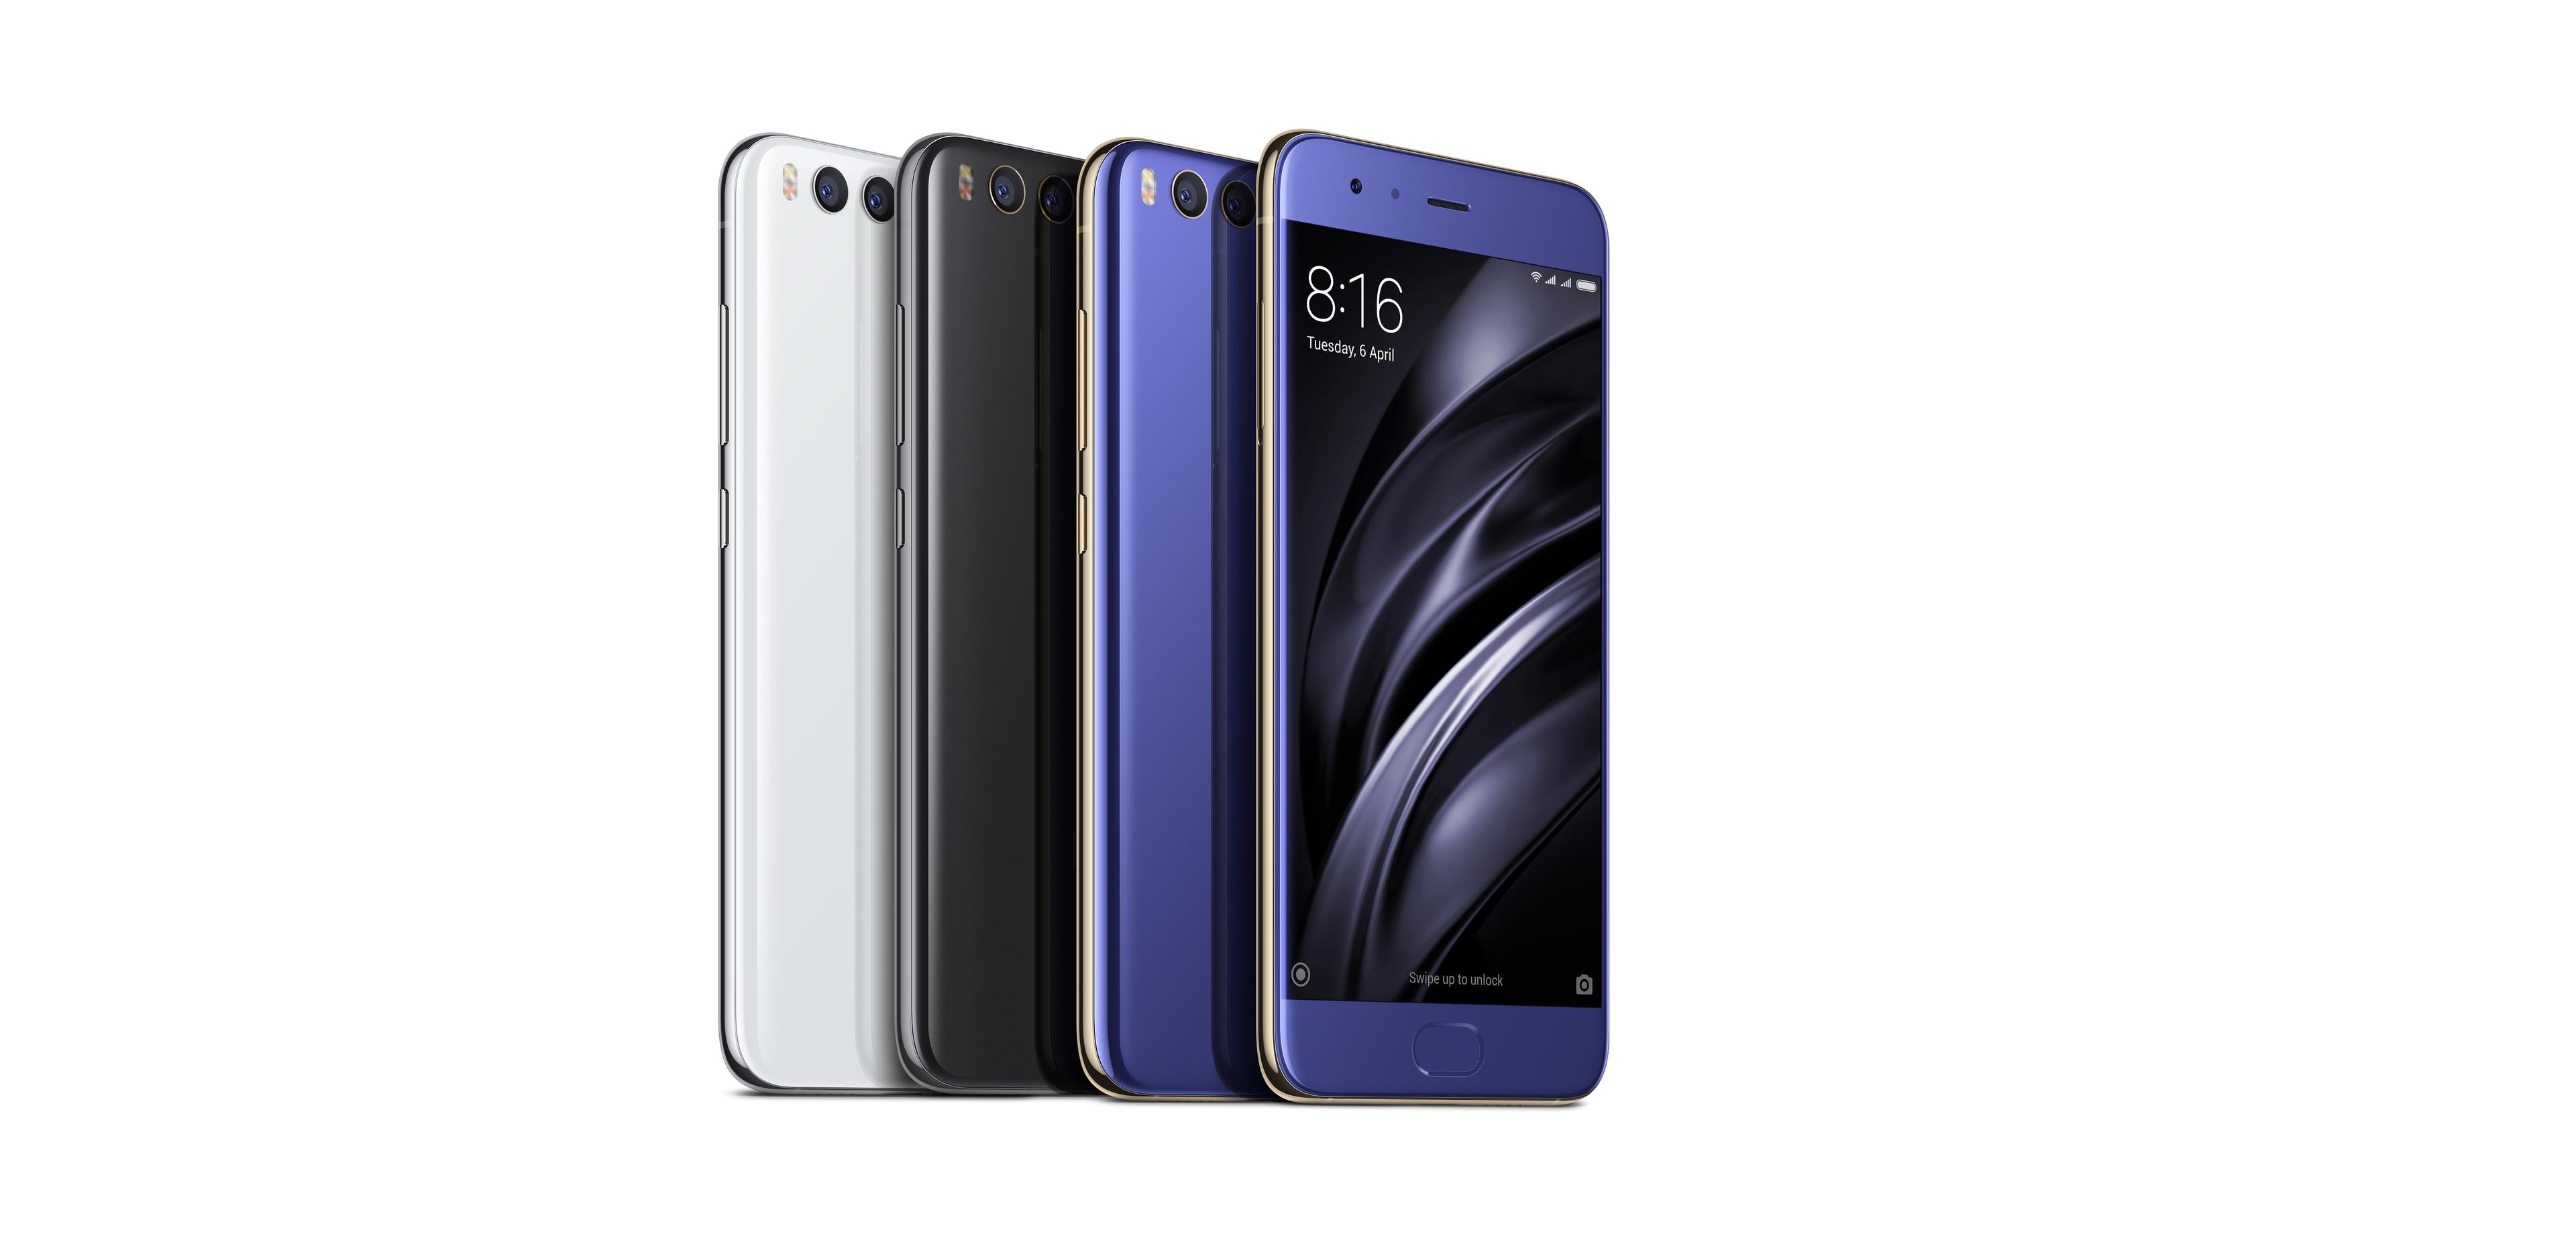 Xiaomis Smartphone Mi 6: Die Ähnlichkeit zu Apple-Produkten ist frappierend / 